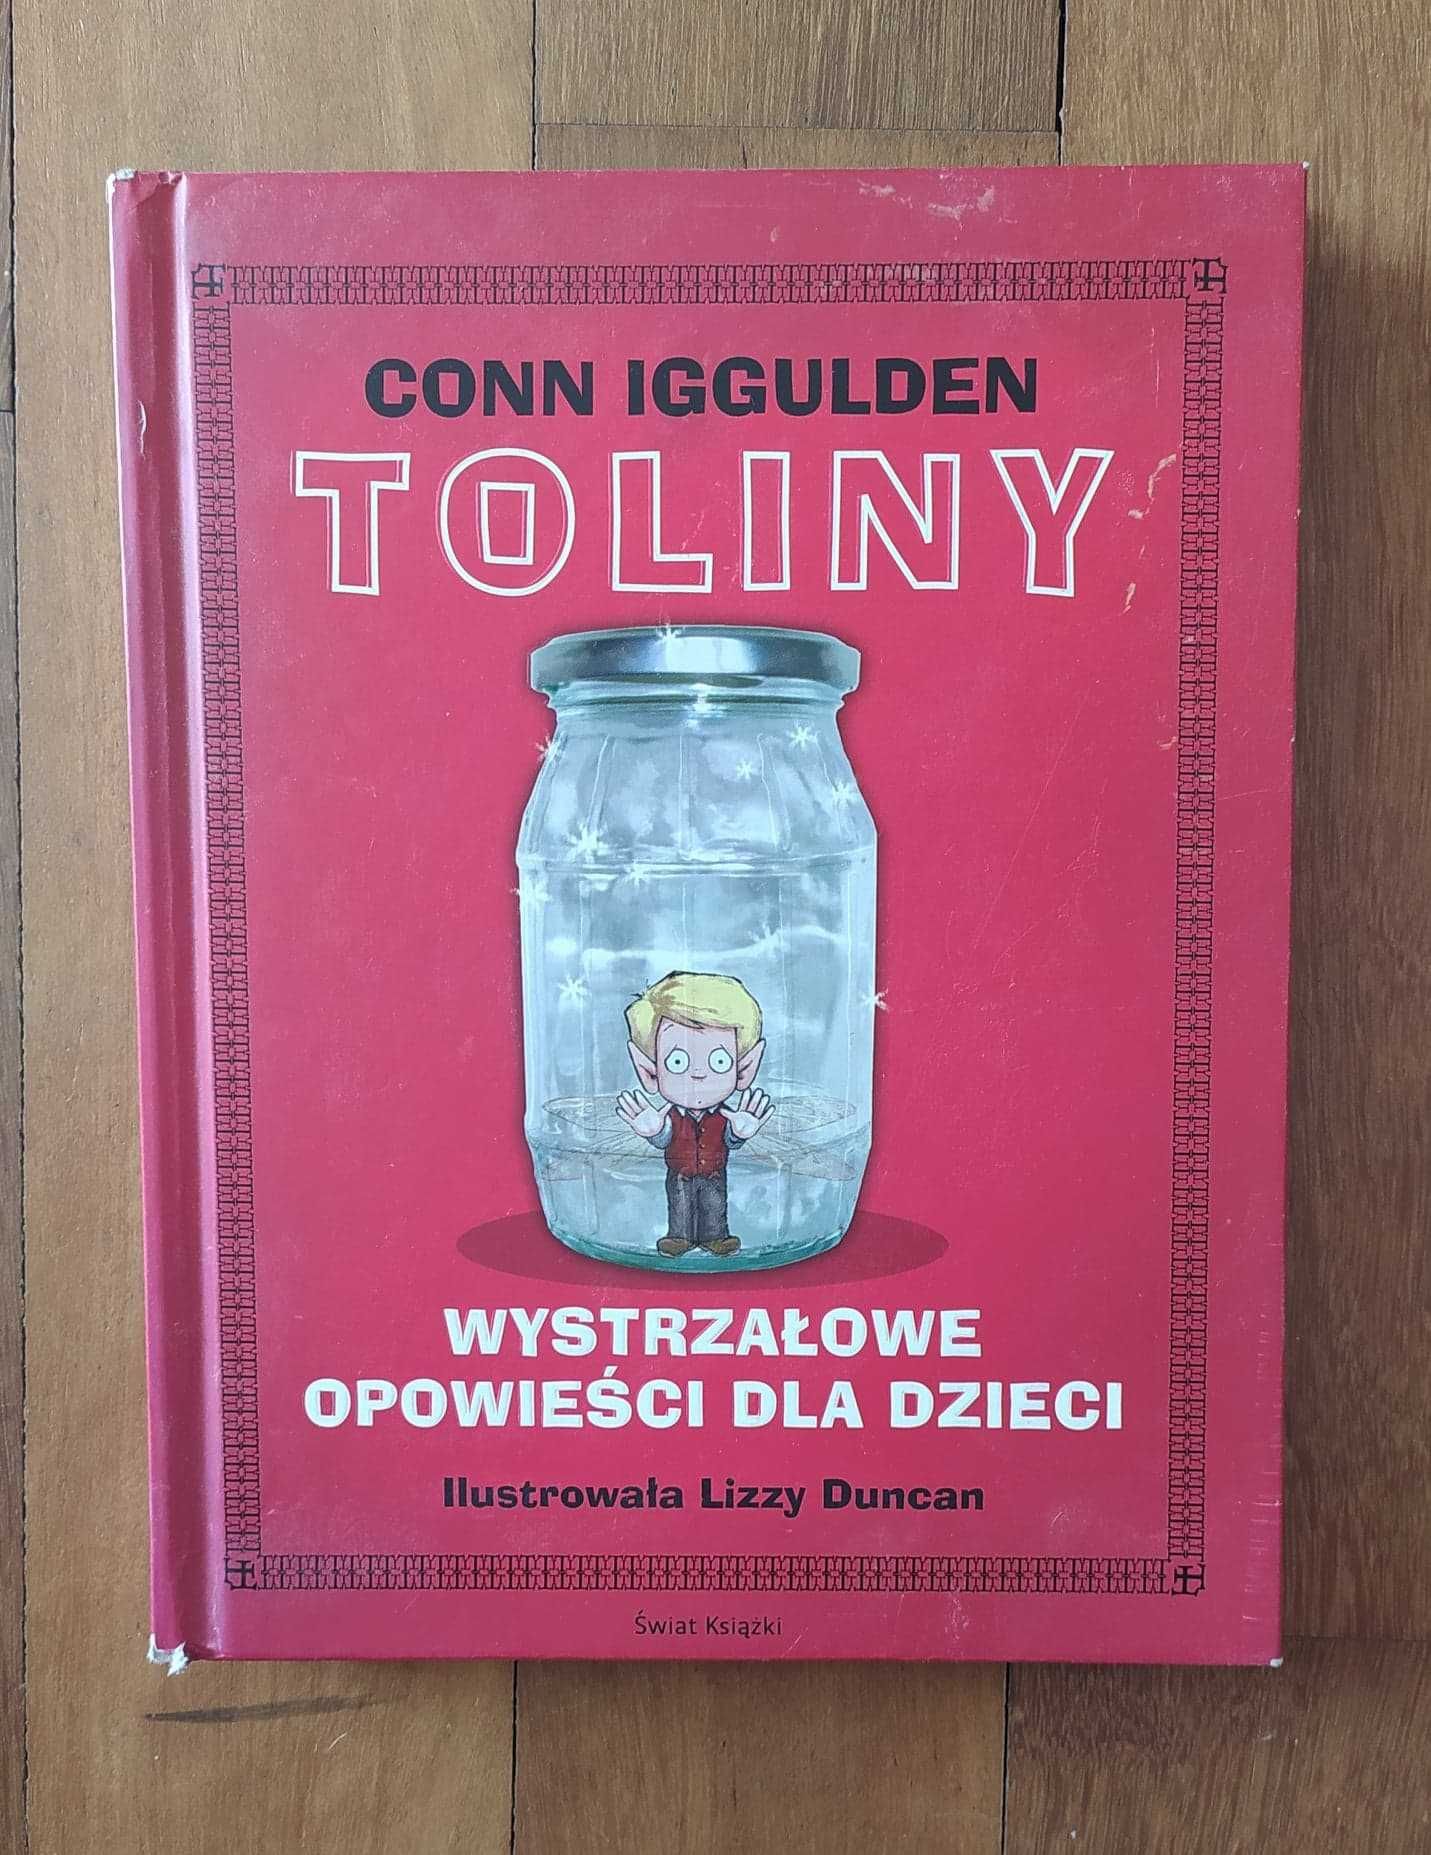 Conn Iggulden "Toliny" wystrzałowe opowieści dla dzieci